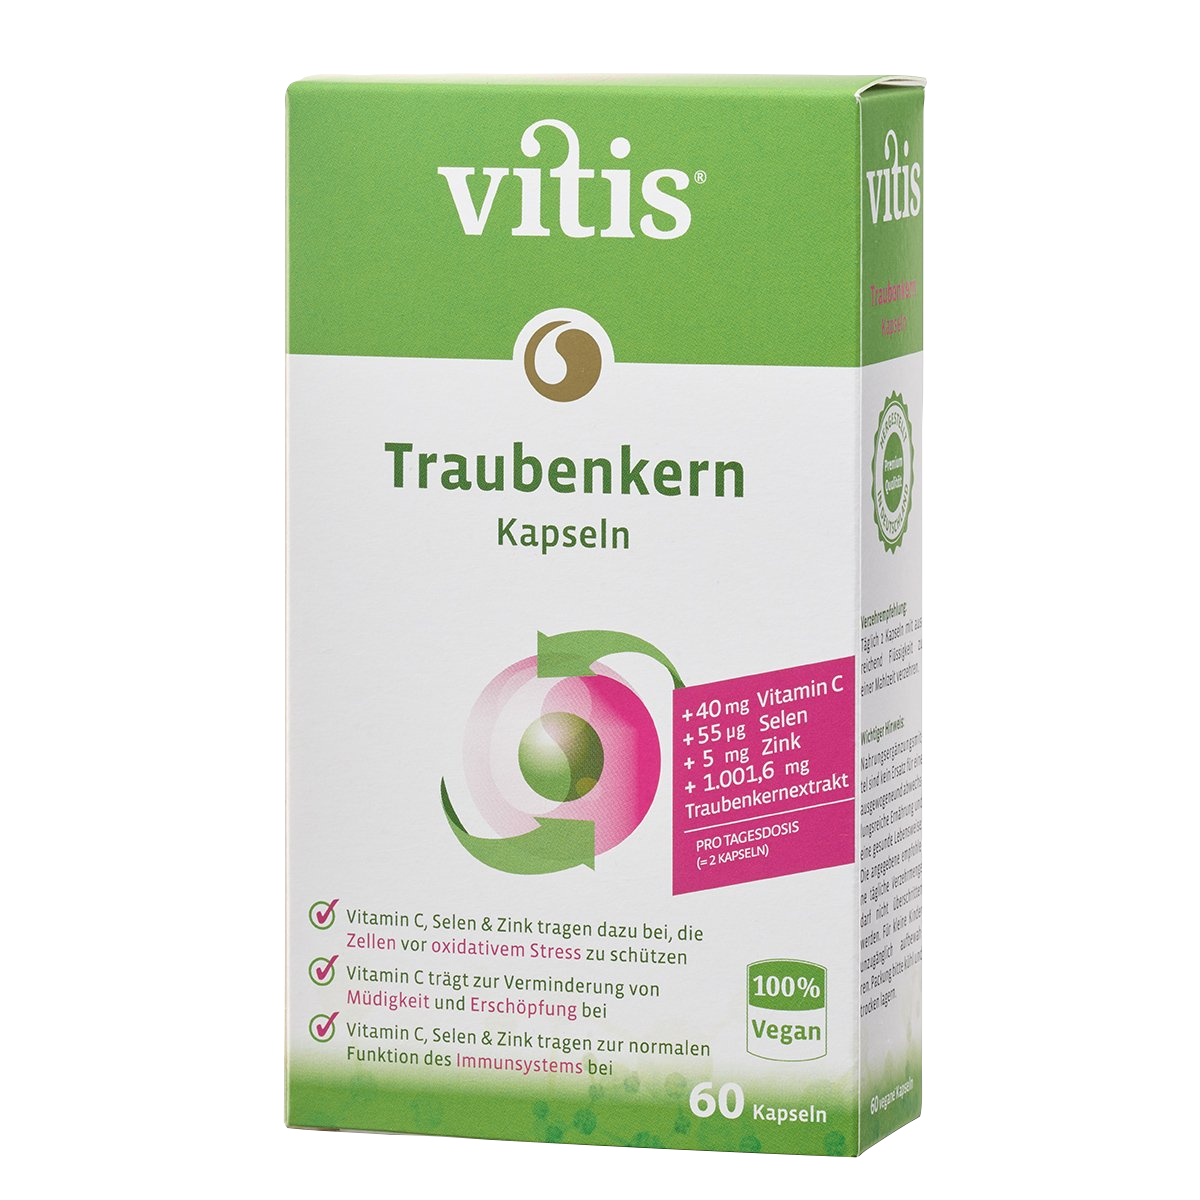 Eine Packung mit 60 Traubenkernkapseln von der Firma Vitis Traubenkern GmbH.